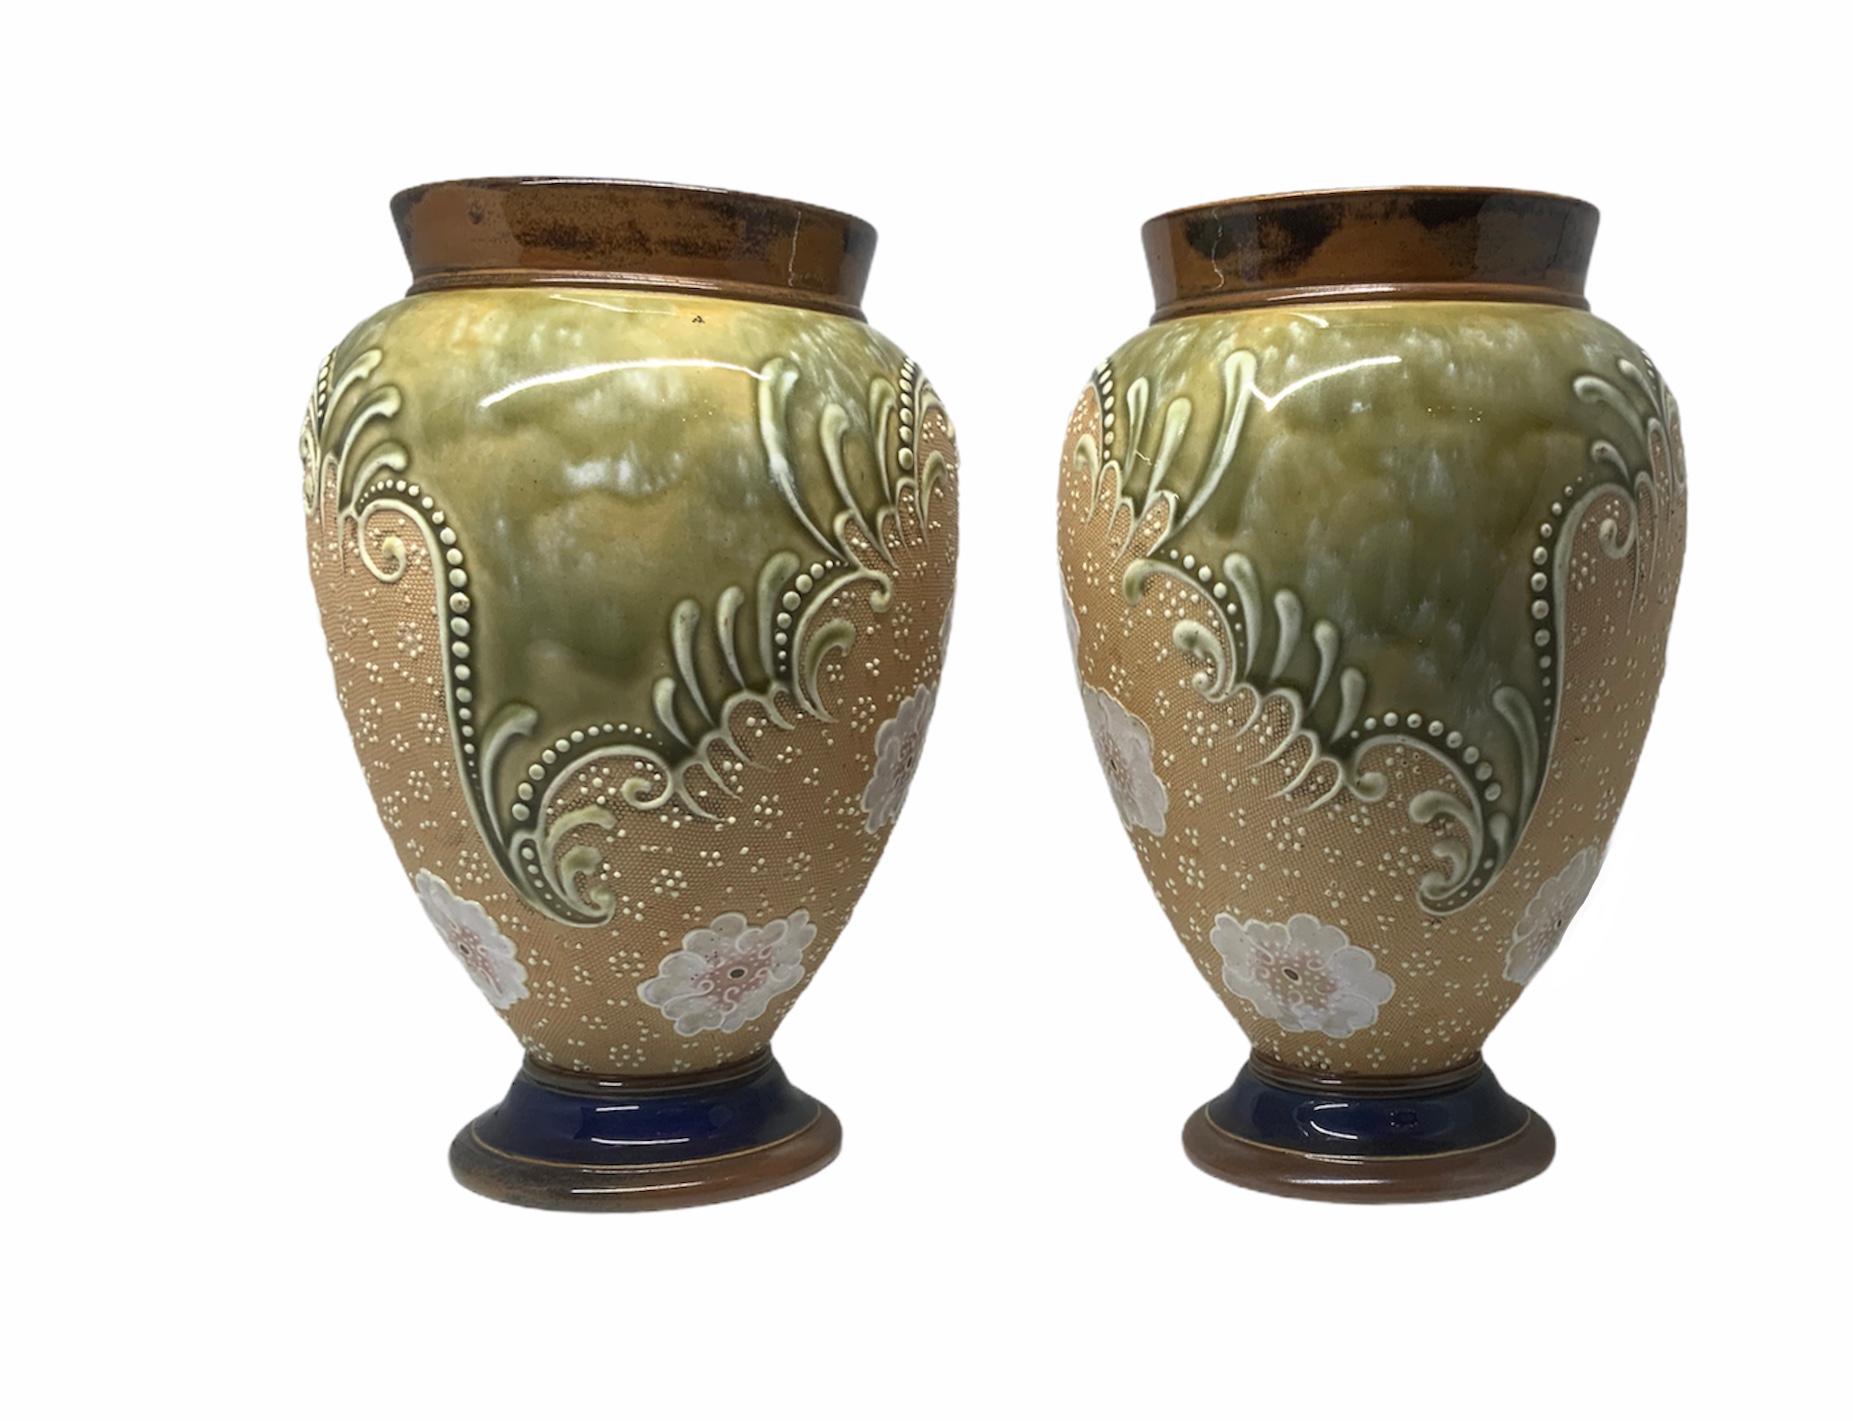 Il s'agit d'une paire de vases en grès peints à la main de Doulton et Slater en forme d'Amphora. Leur fond est une combinaison de couleurs brunes, vertes et beiges. Elles sont ornées d'un groupe de fleurs blanches, de points tout autour, et